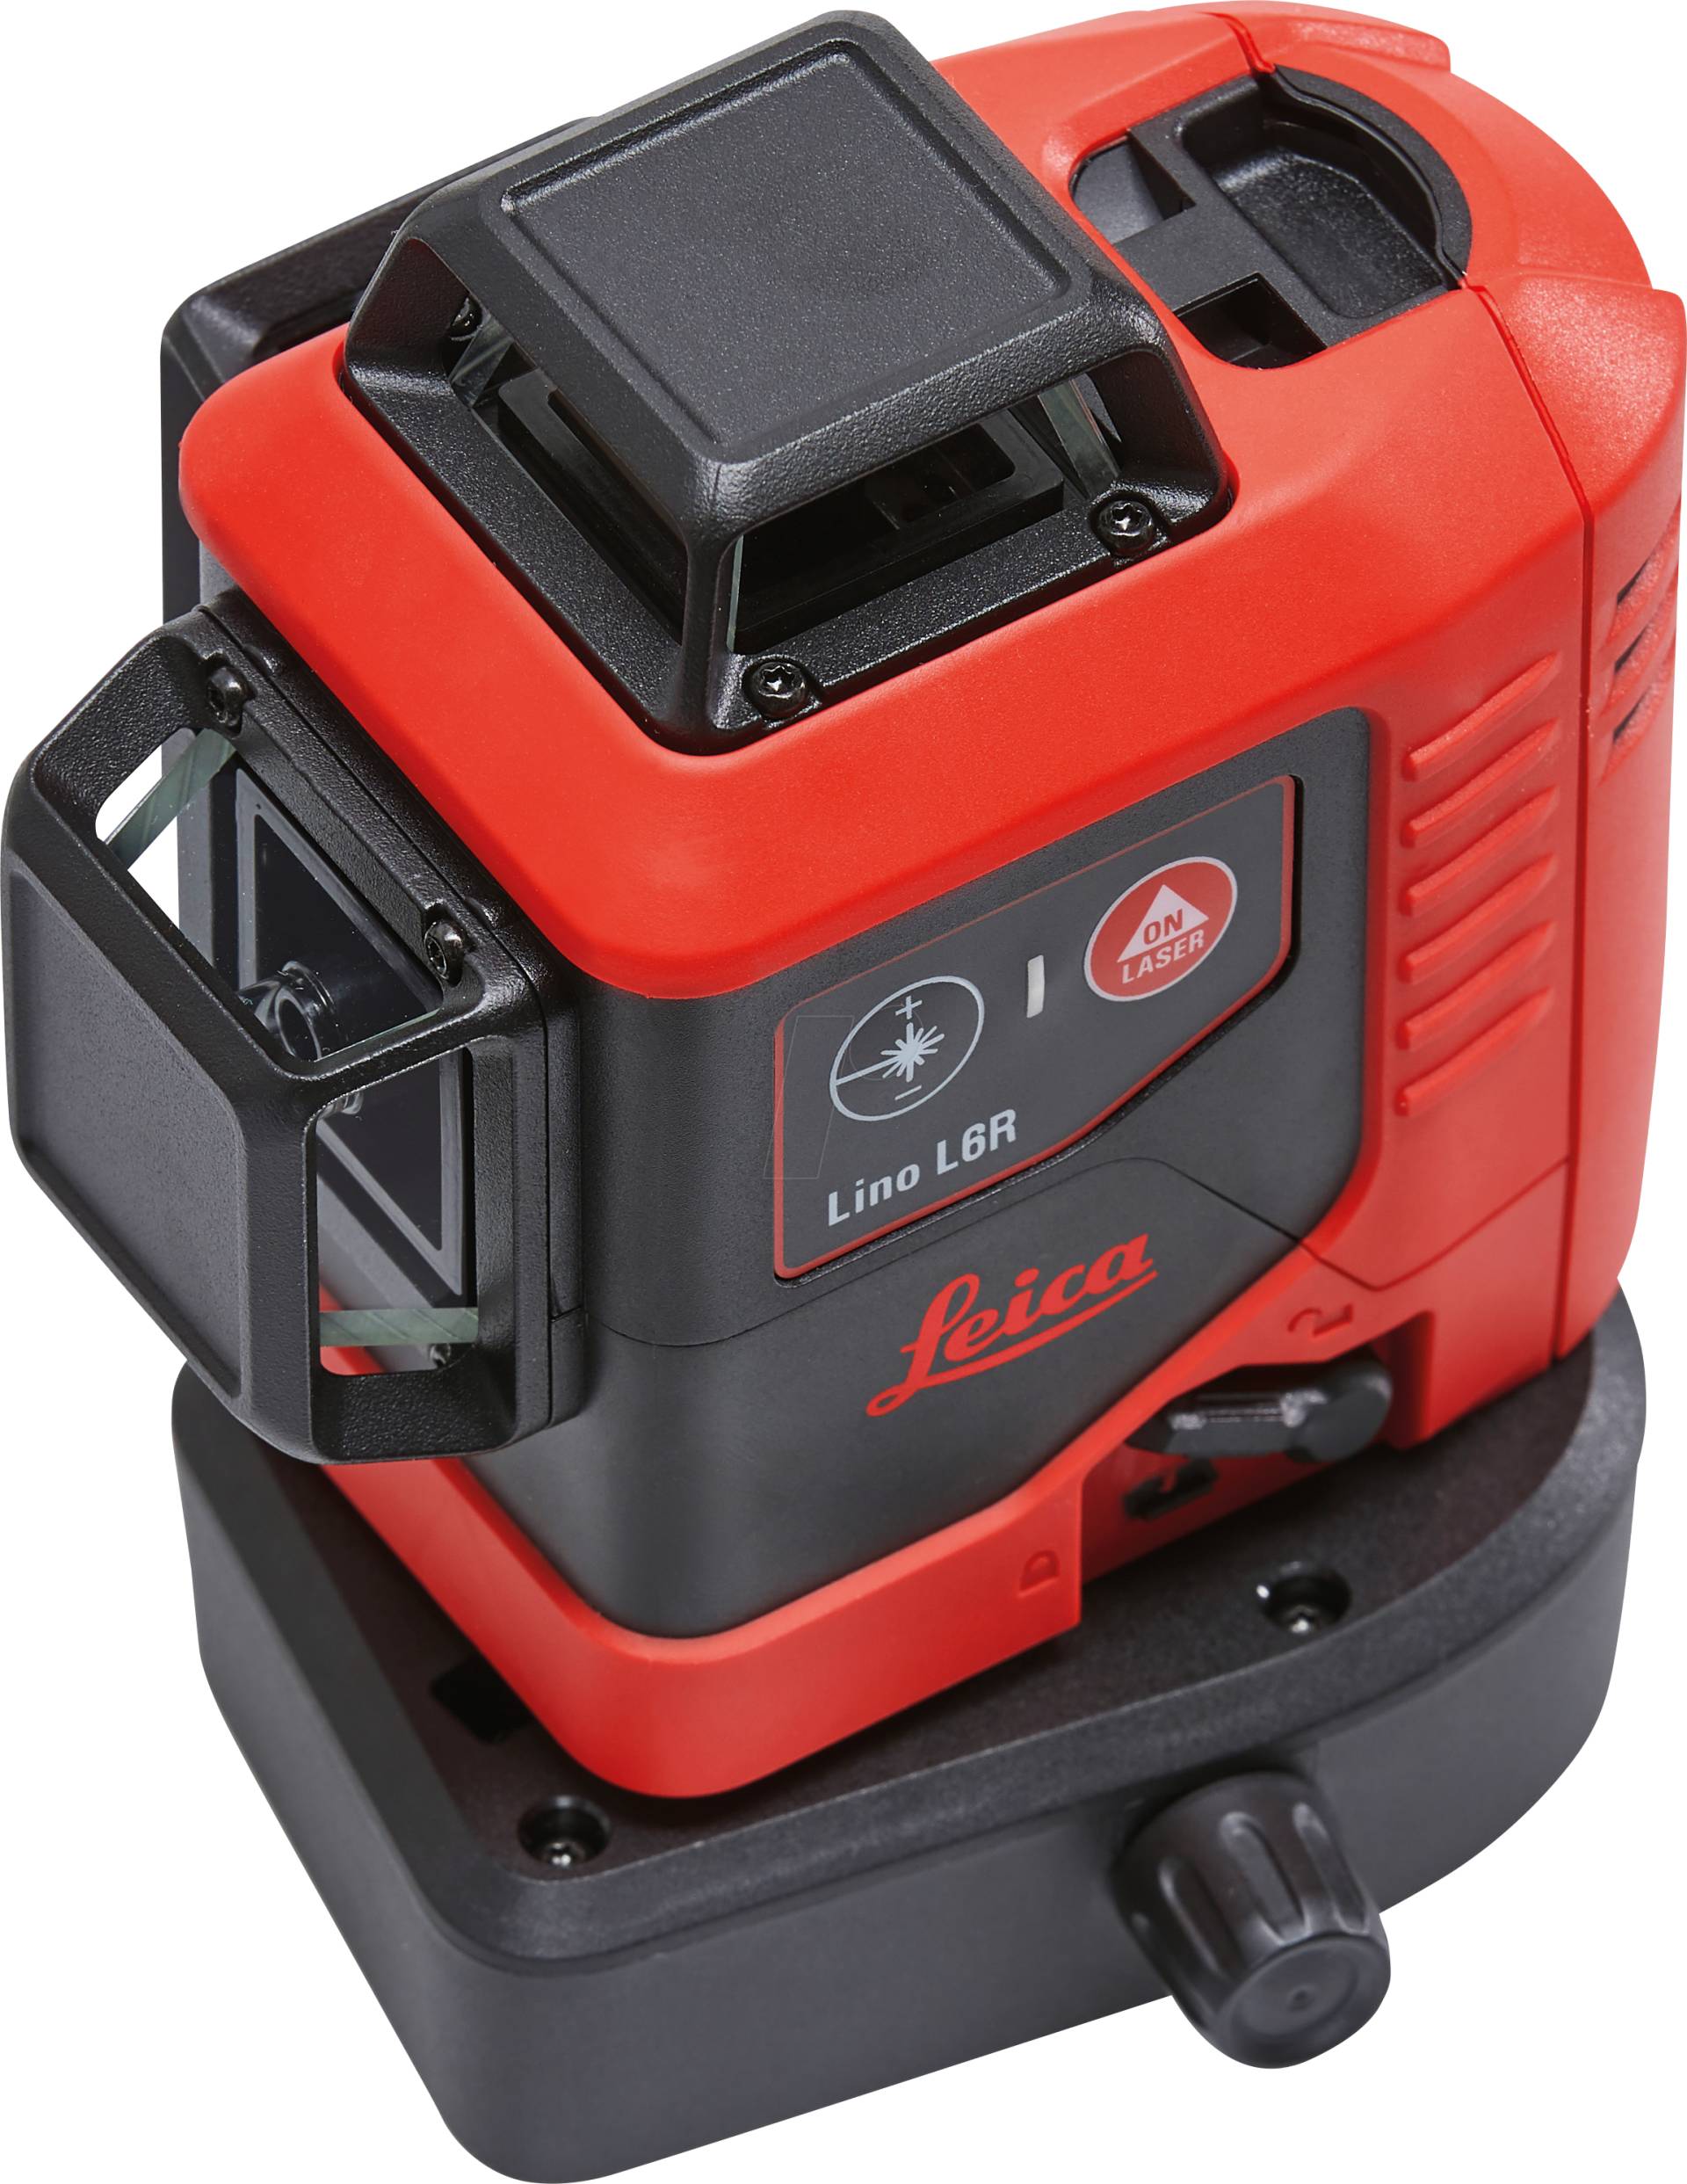 LINO L6RS-1 - Leica Lino L6Rs-1, 3 x 360° Linienlaser rot, Alkaline von LEICA GEOSYSTEMS